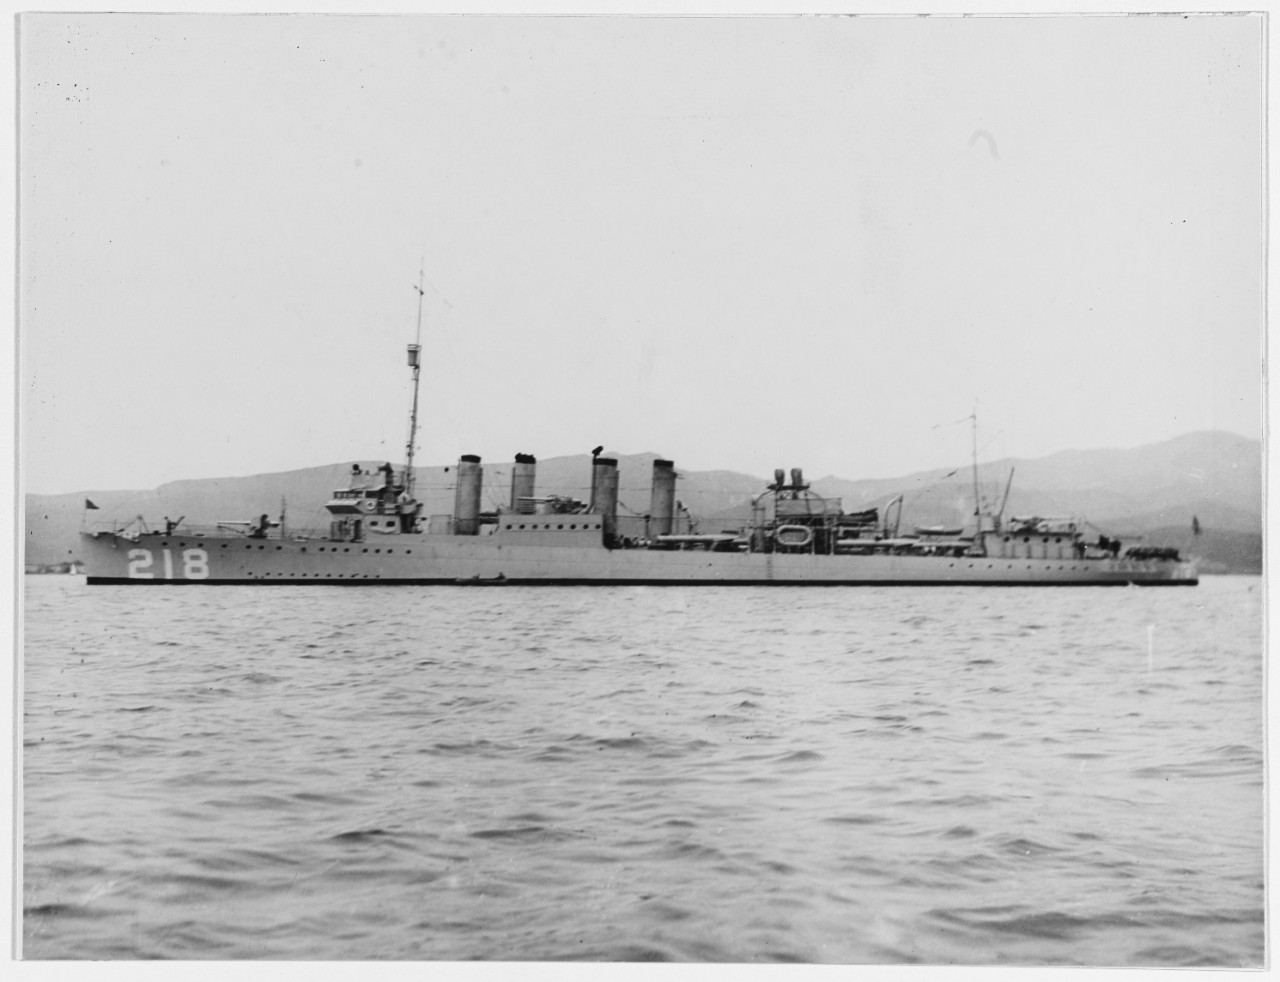 USS PARROTT (DD-218)